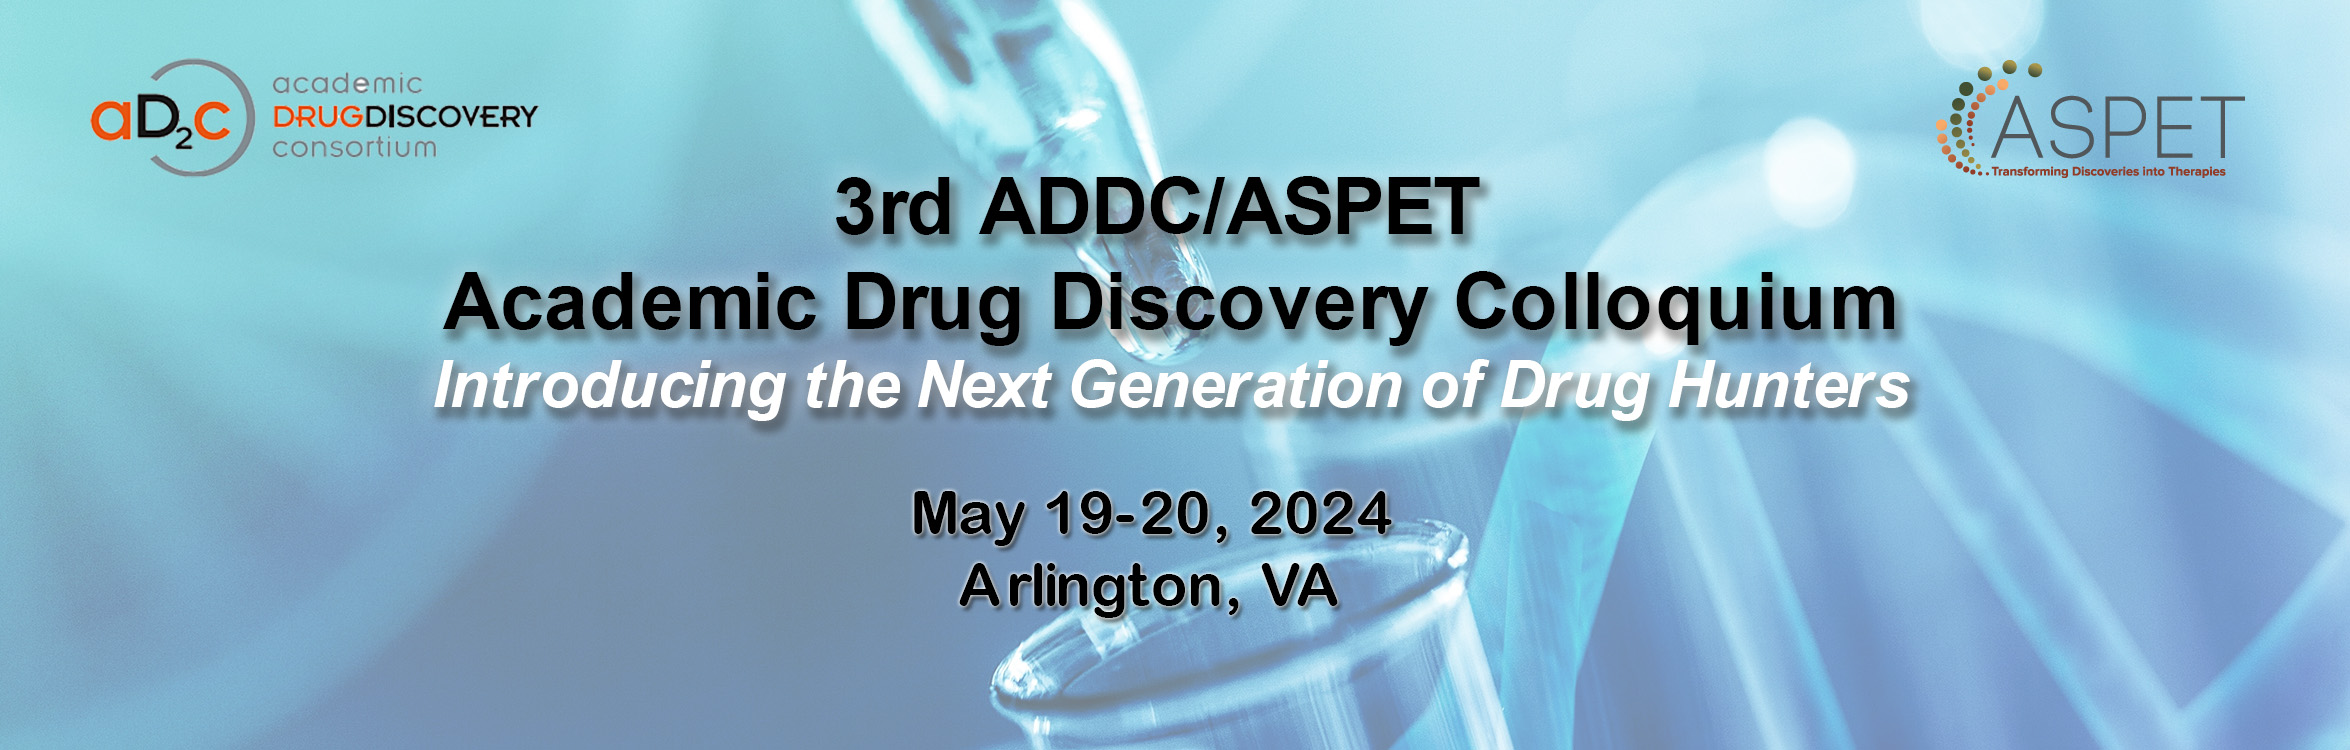 ASPET 3rd ADDC/ASPET Academic Drug Discovery Colloquium